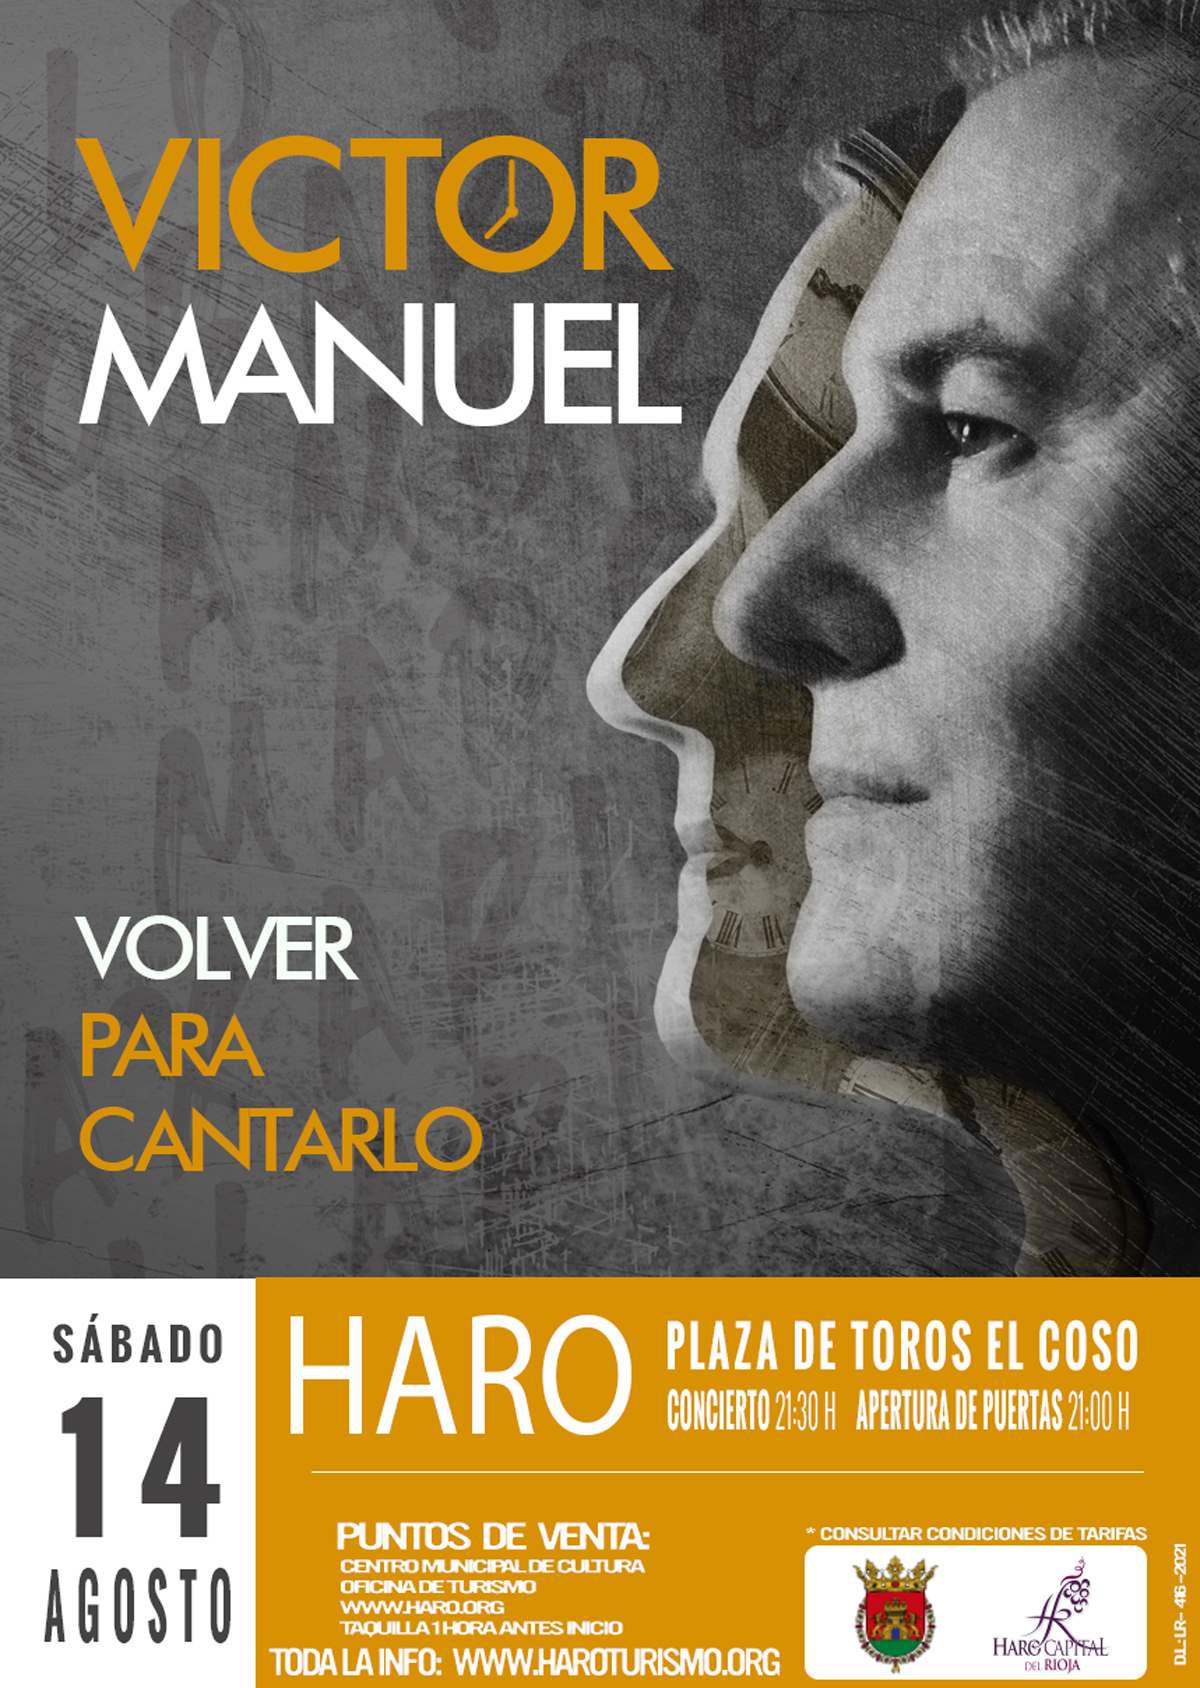 VICTOR MANUEL. VOLVER PARA CANTARLO